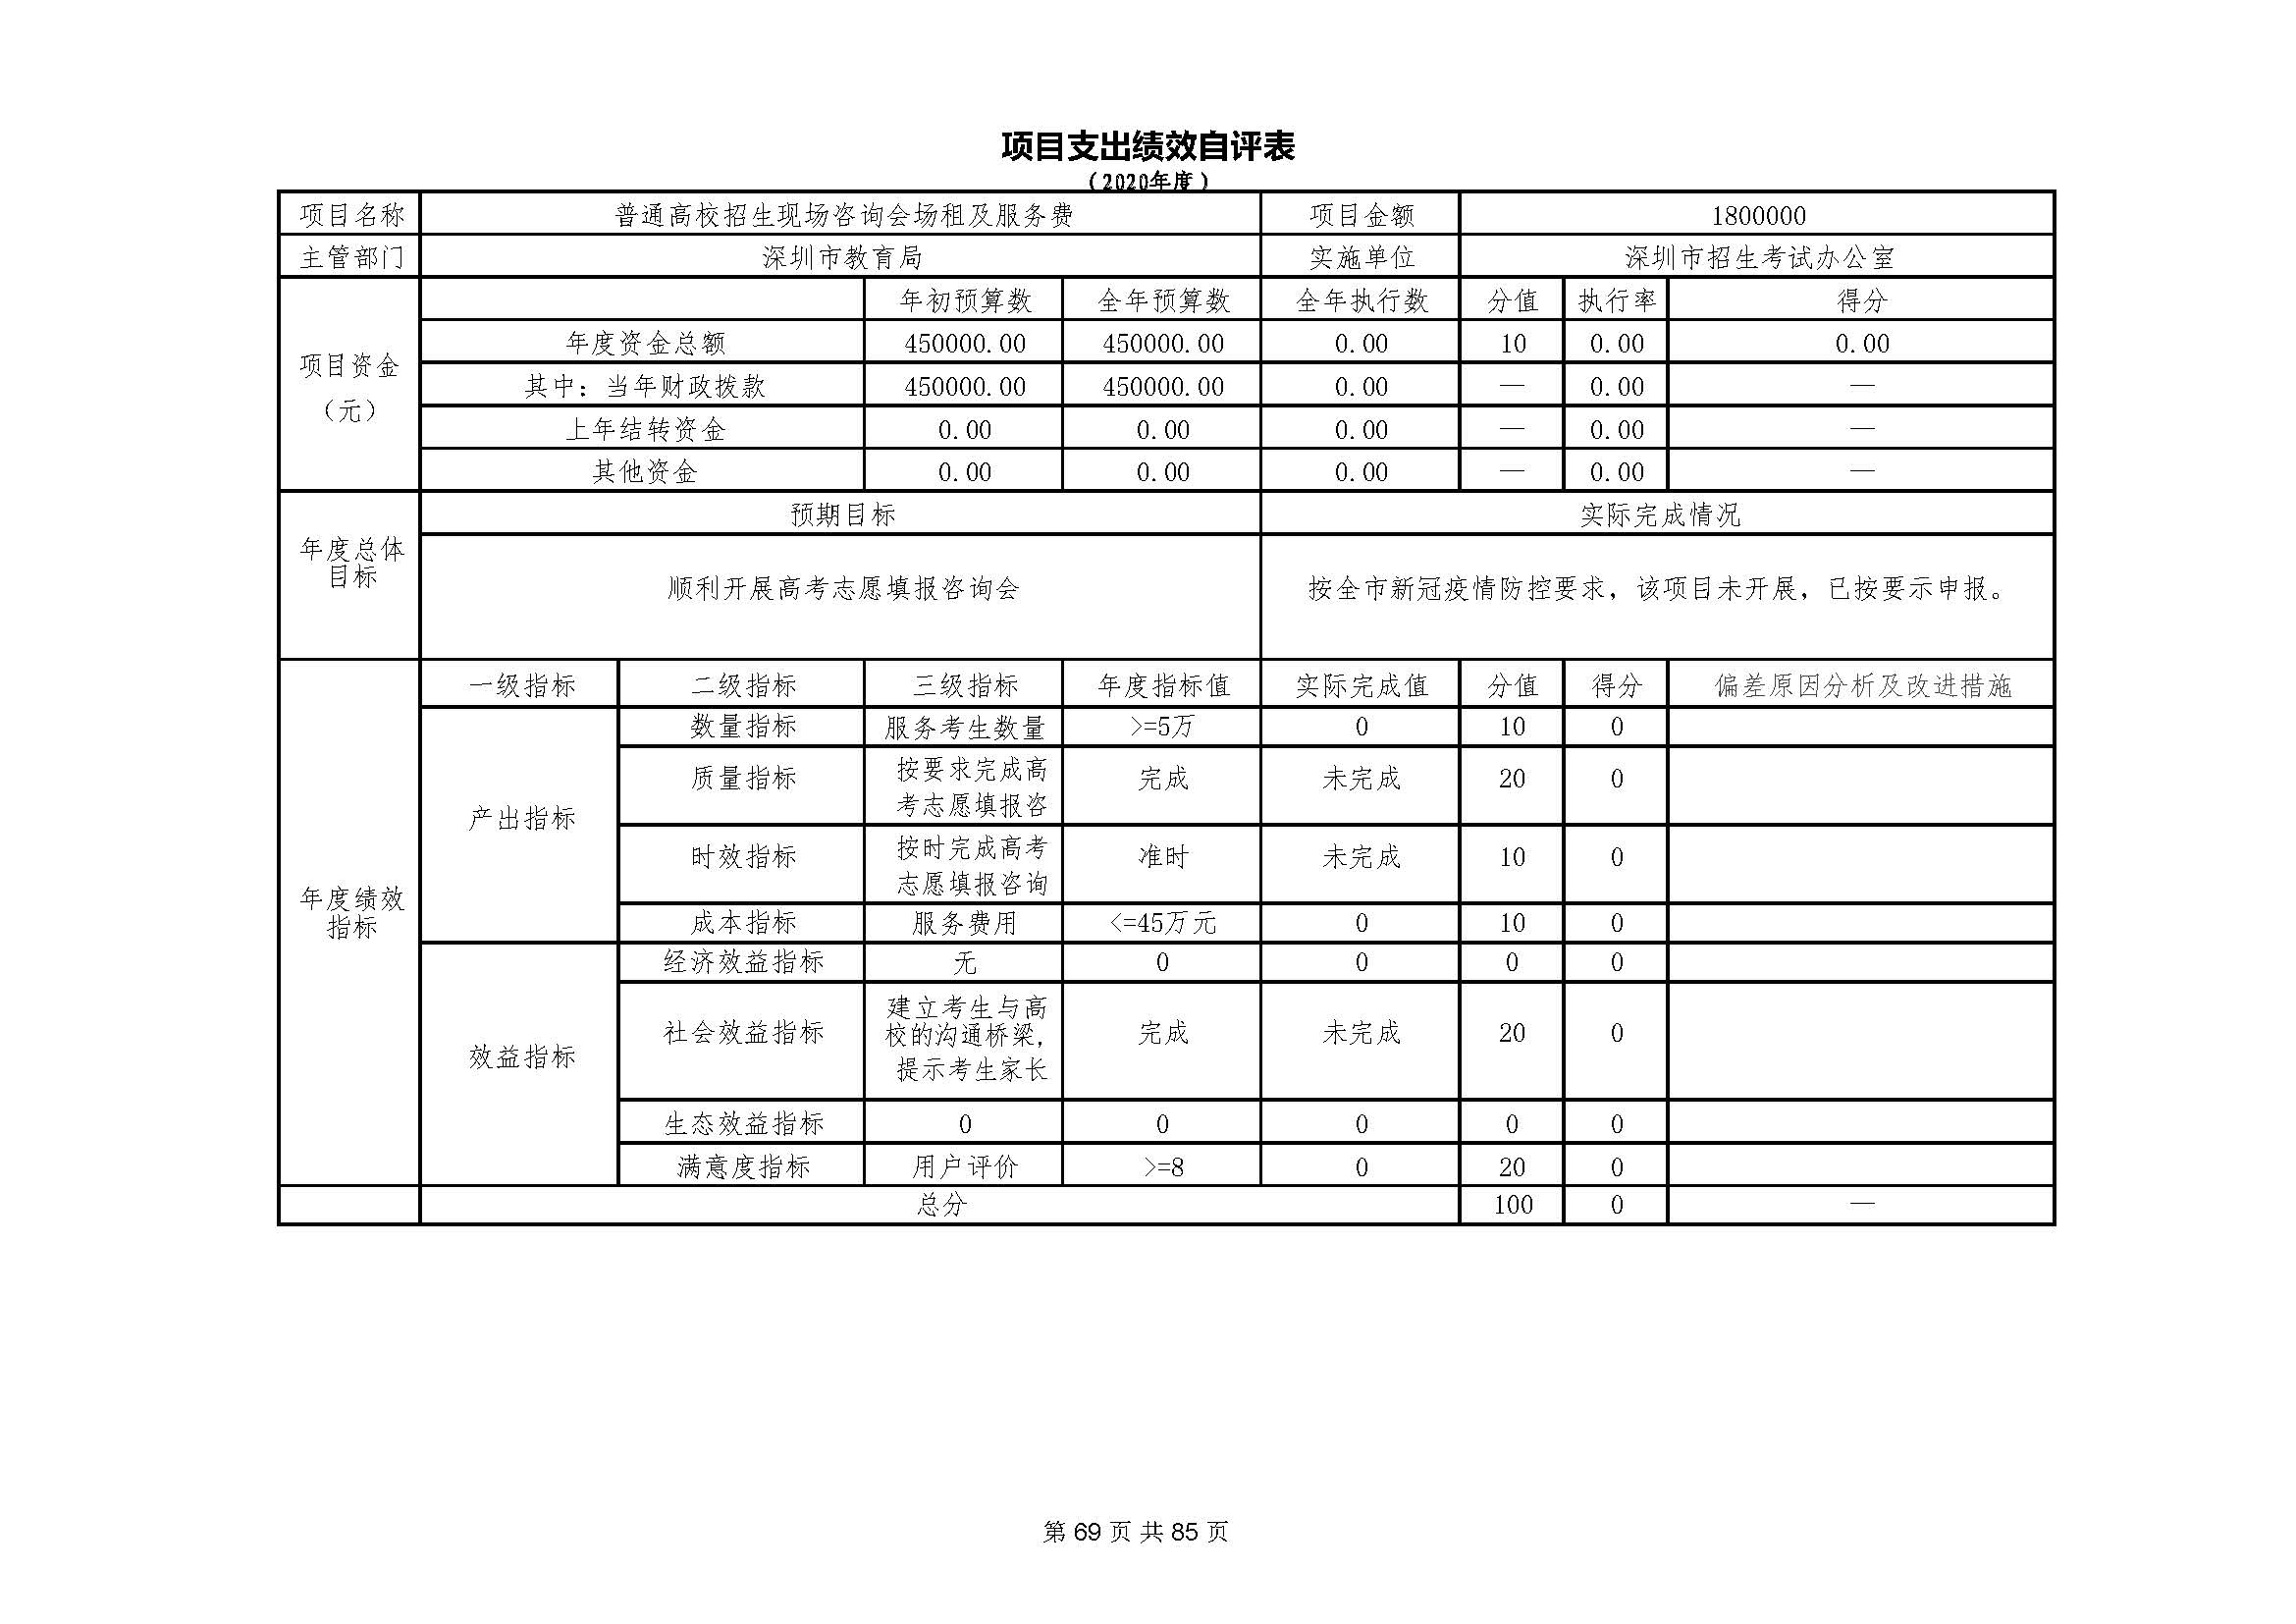 深圳市招生考试办公室2020年度部门决算_页面_70.jpg